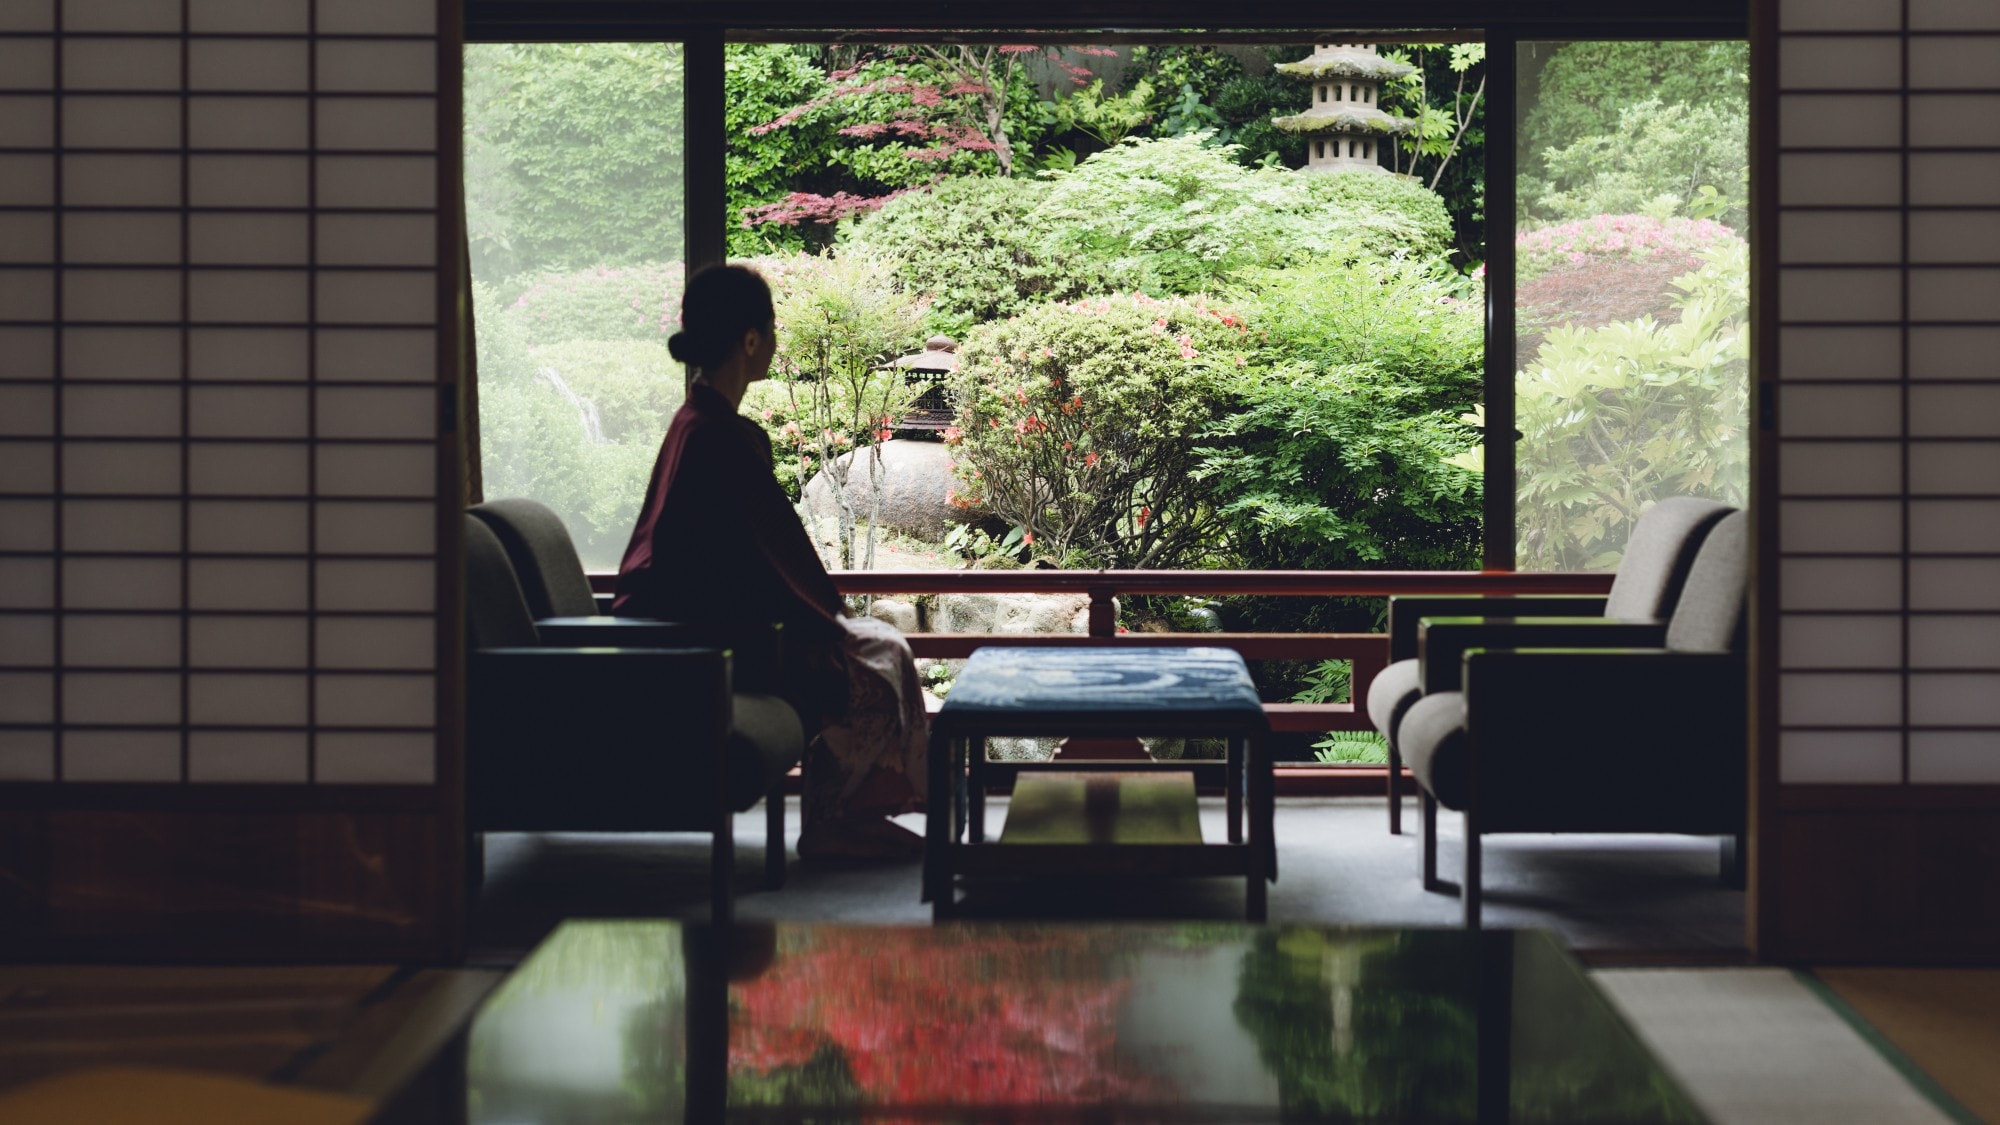 【방으로부터의 풍경】 일본 정원 측의 방에서는 사계절의 풍경을 즐길 수 있습니다.